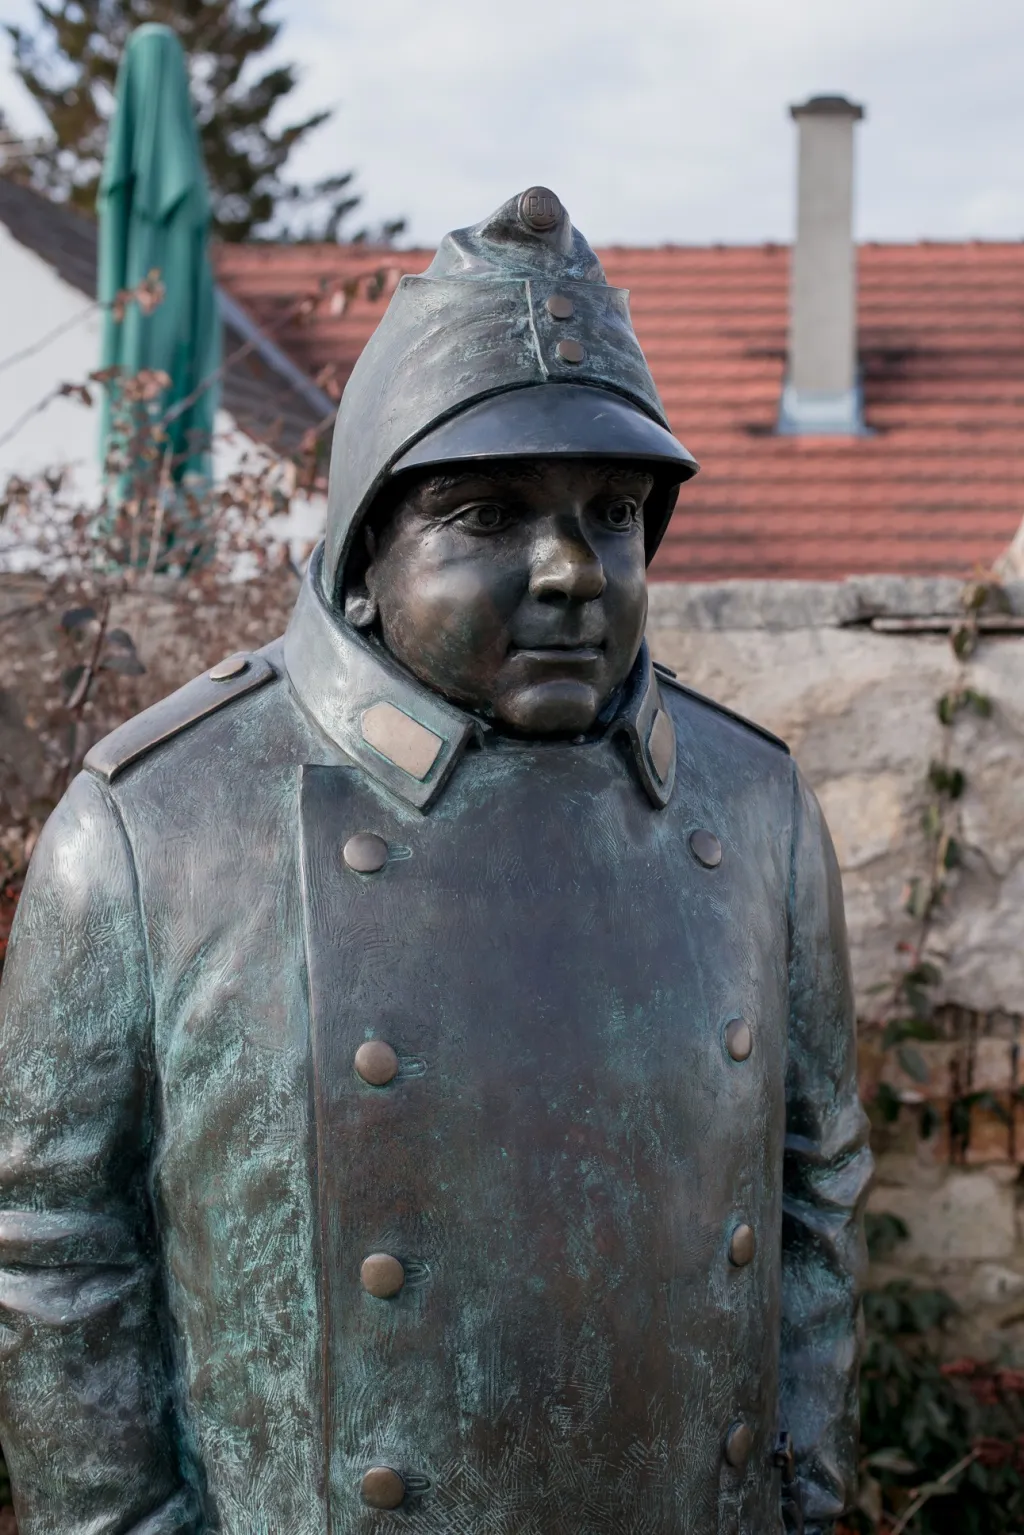 Putimští jsou na svého hrdinu pyšní. V roce 2014 zde byla odhalena první socha Švejka, která je postavena na území České republiky